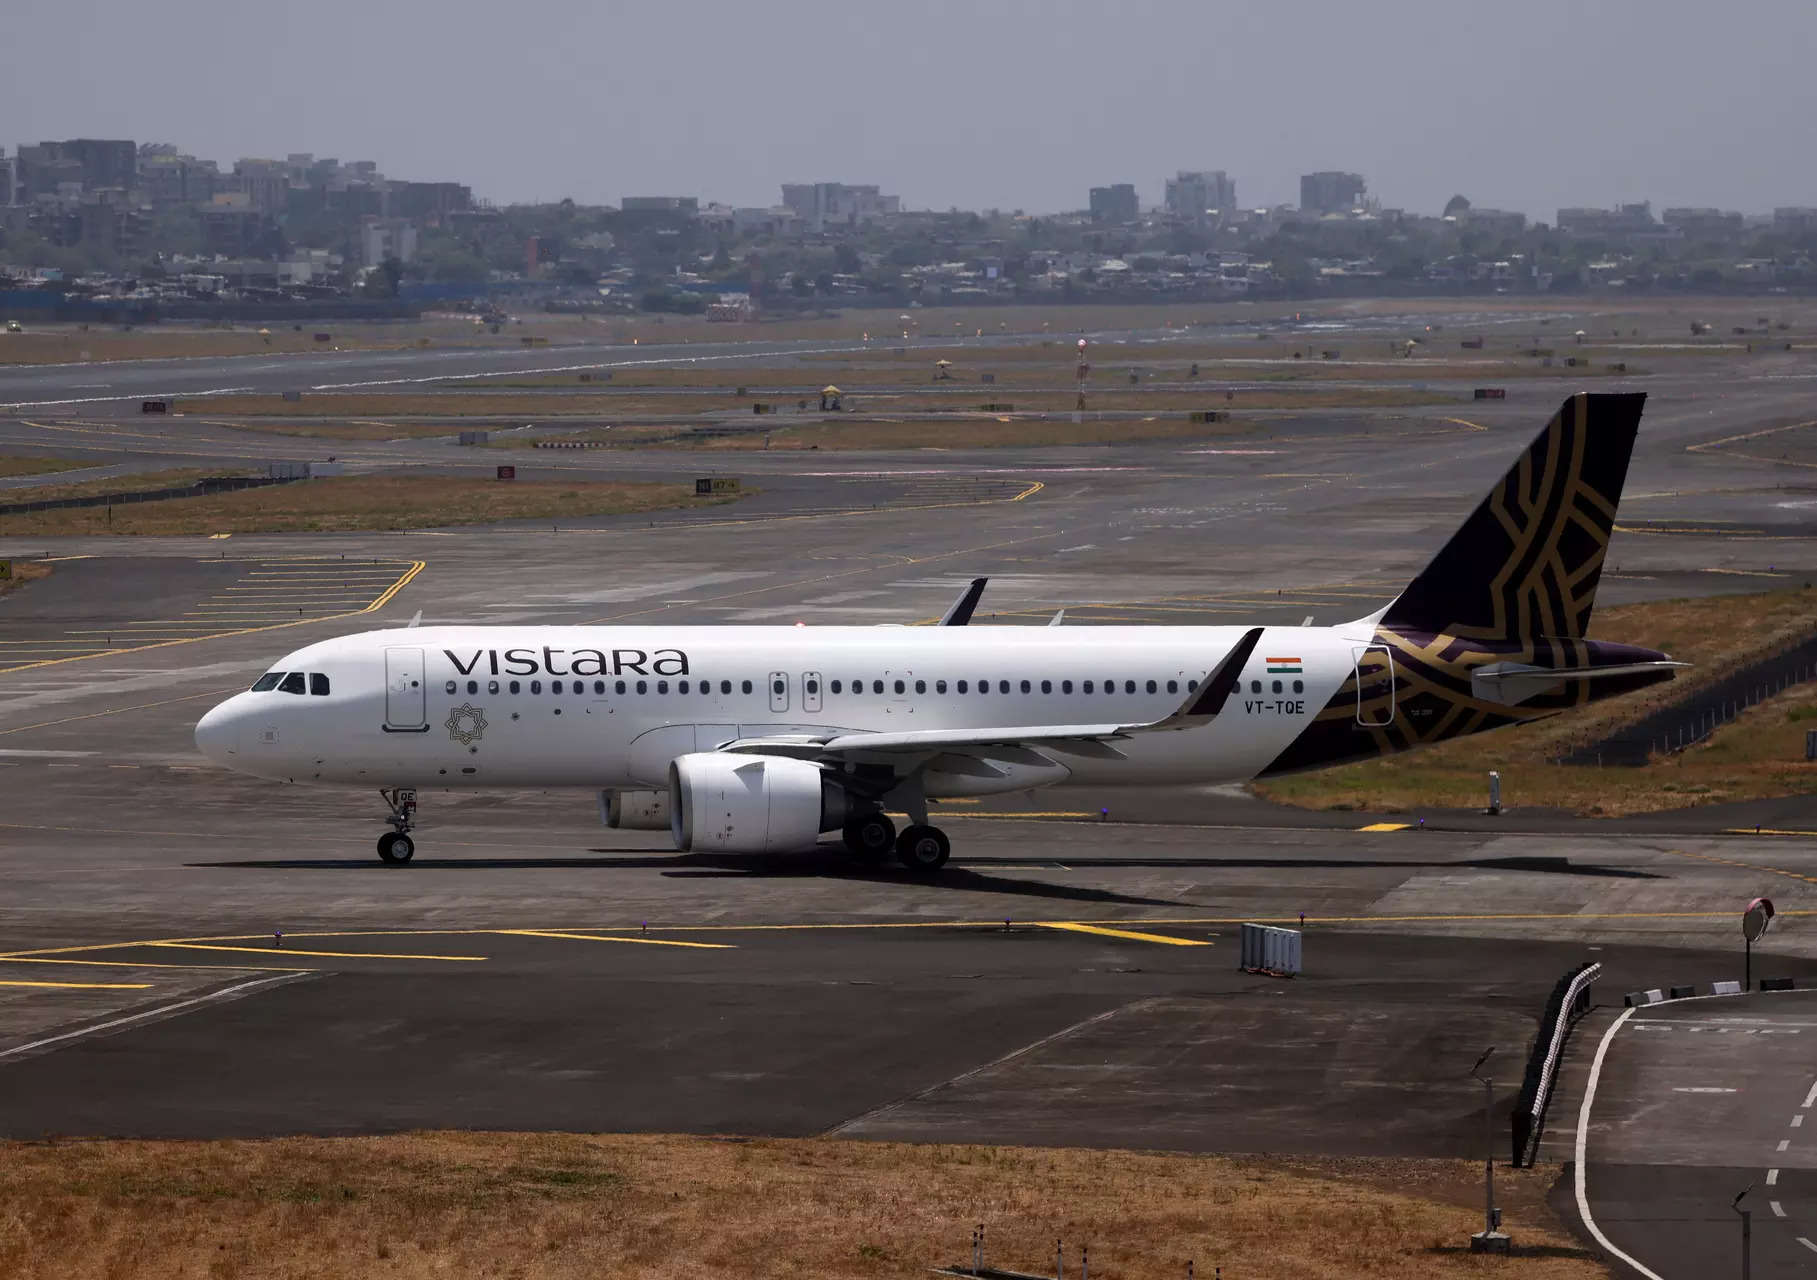 <p>A Vistara passenger aircraft on the tarmac at Chhatrapati Shivaji International Airport.</p>